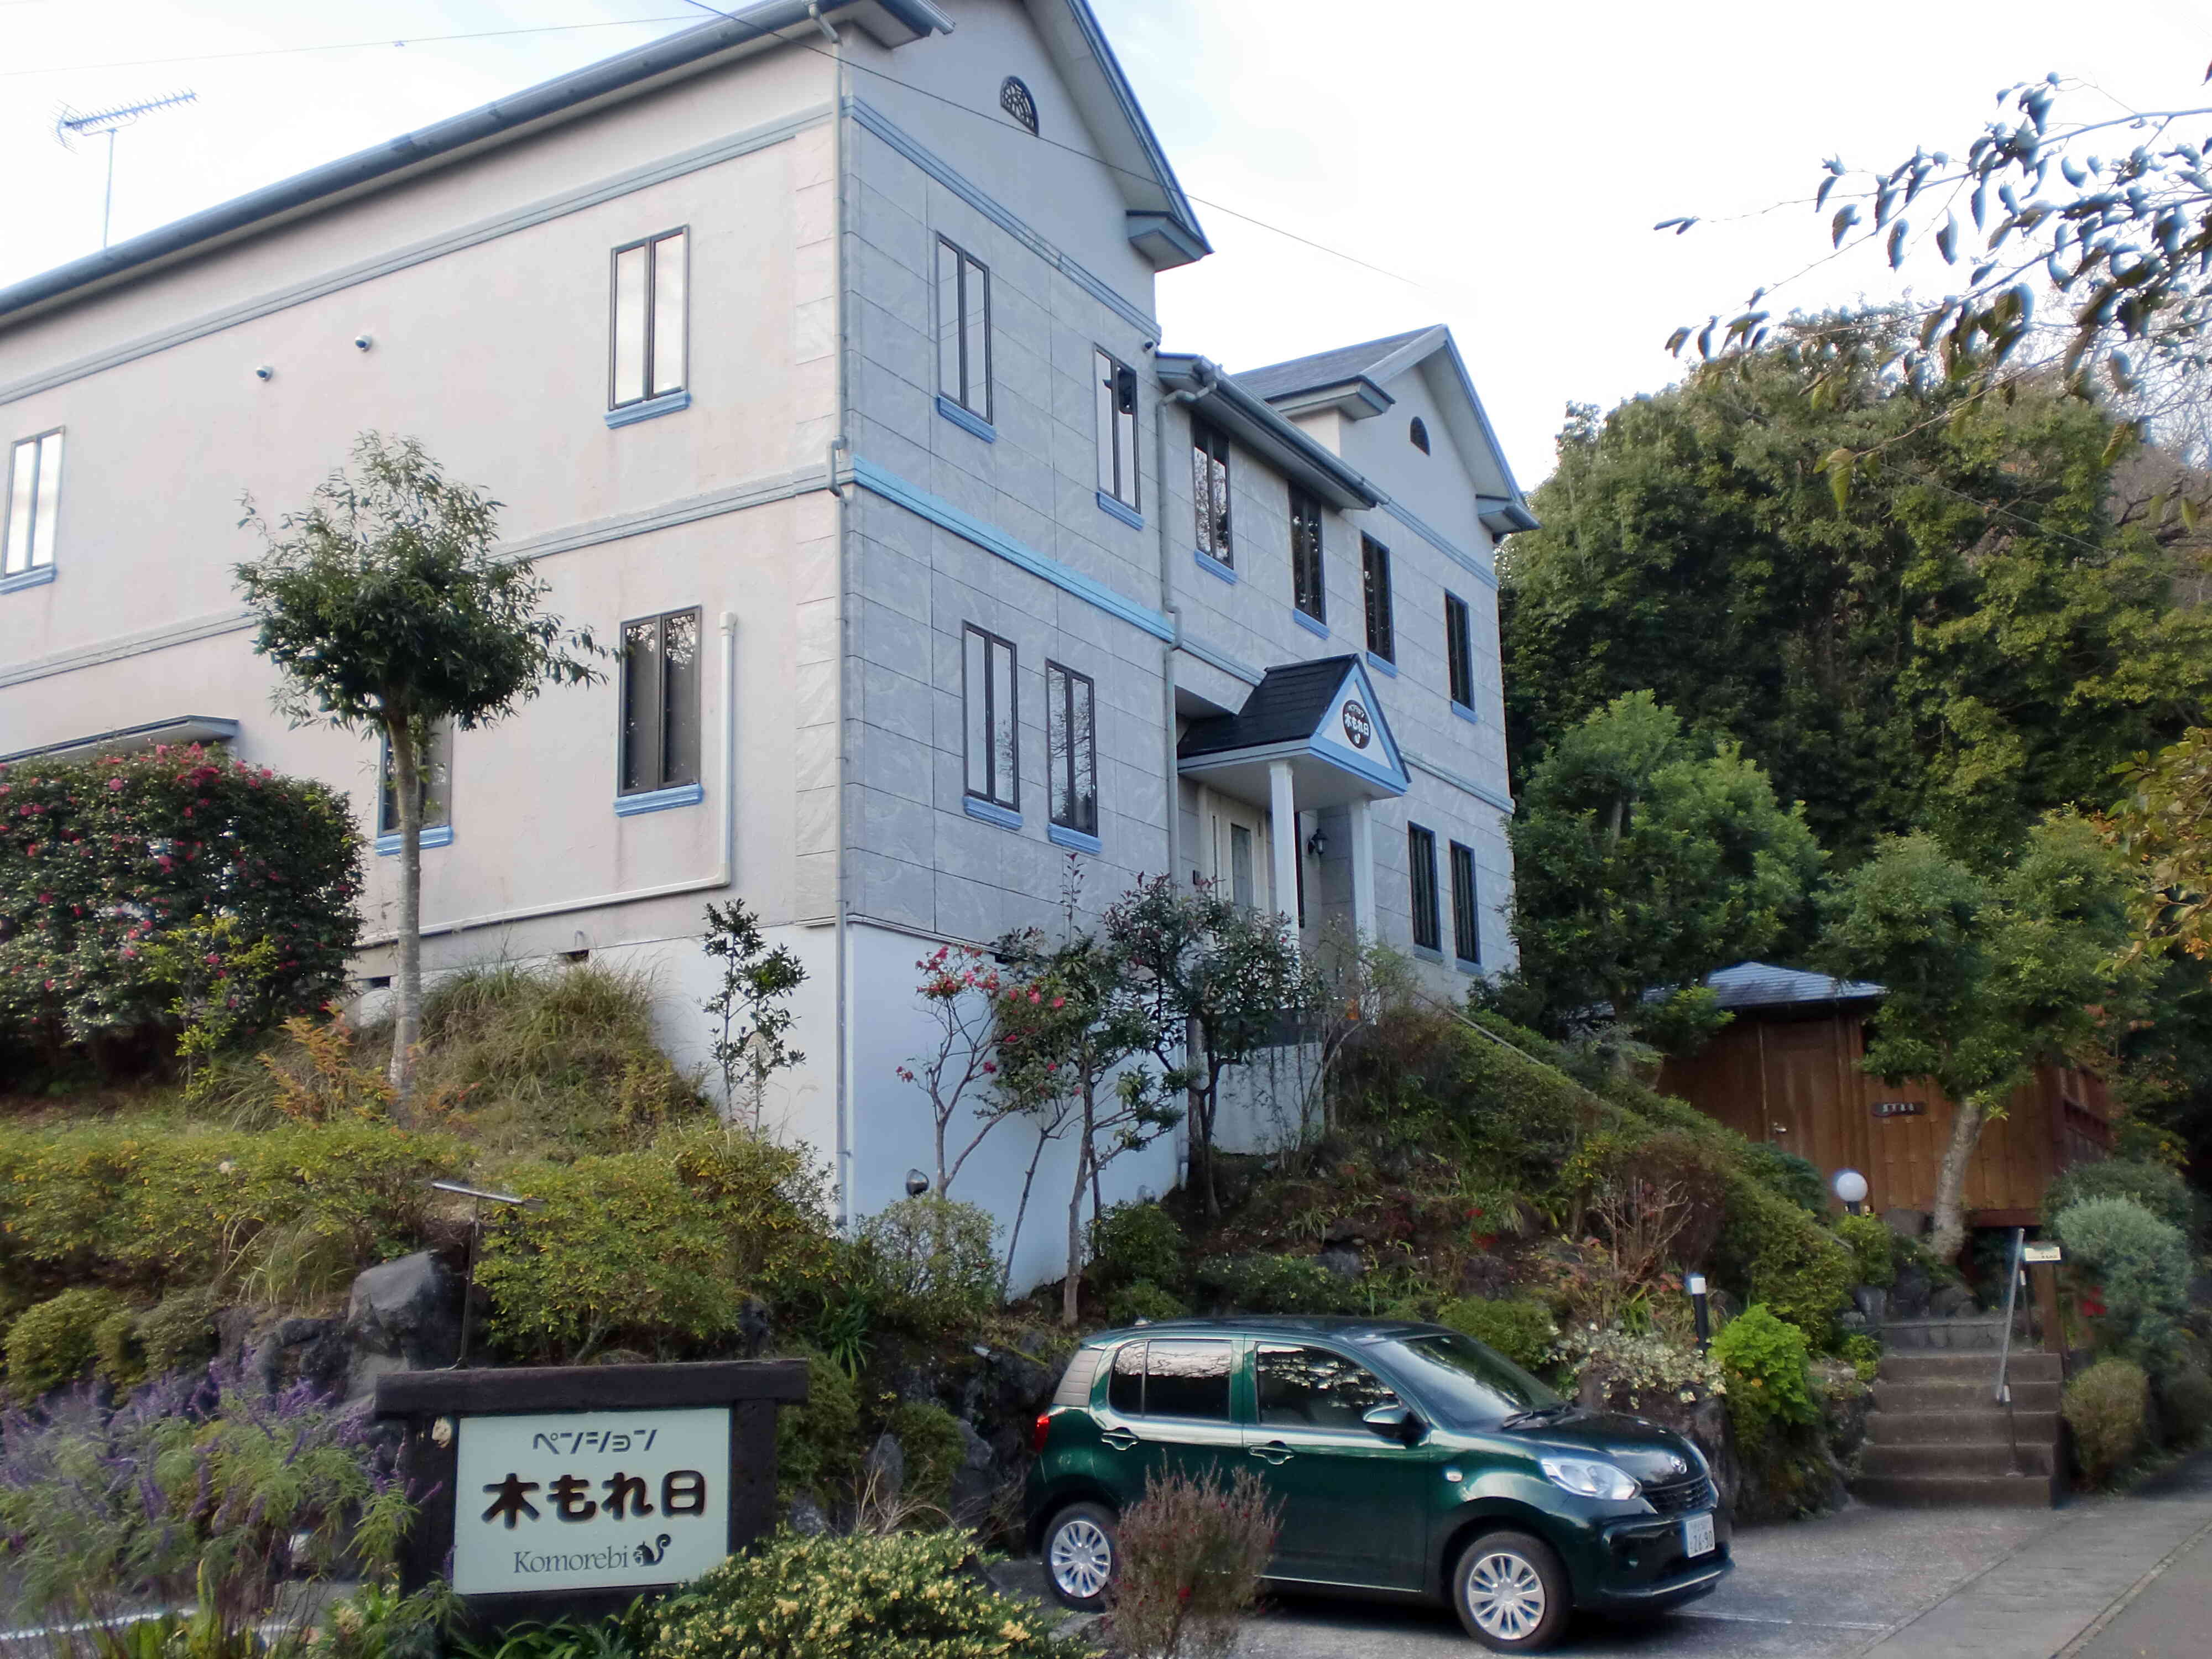 伊豆高原駅から車で10分ほどの場所に、名鉄赤沢別荘地内にある自然環境豊かな場所にあります。